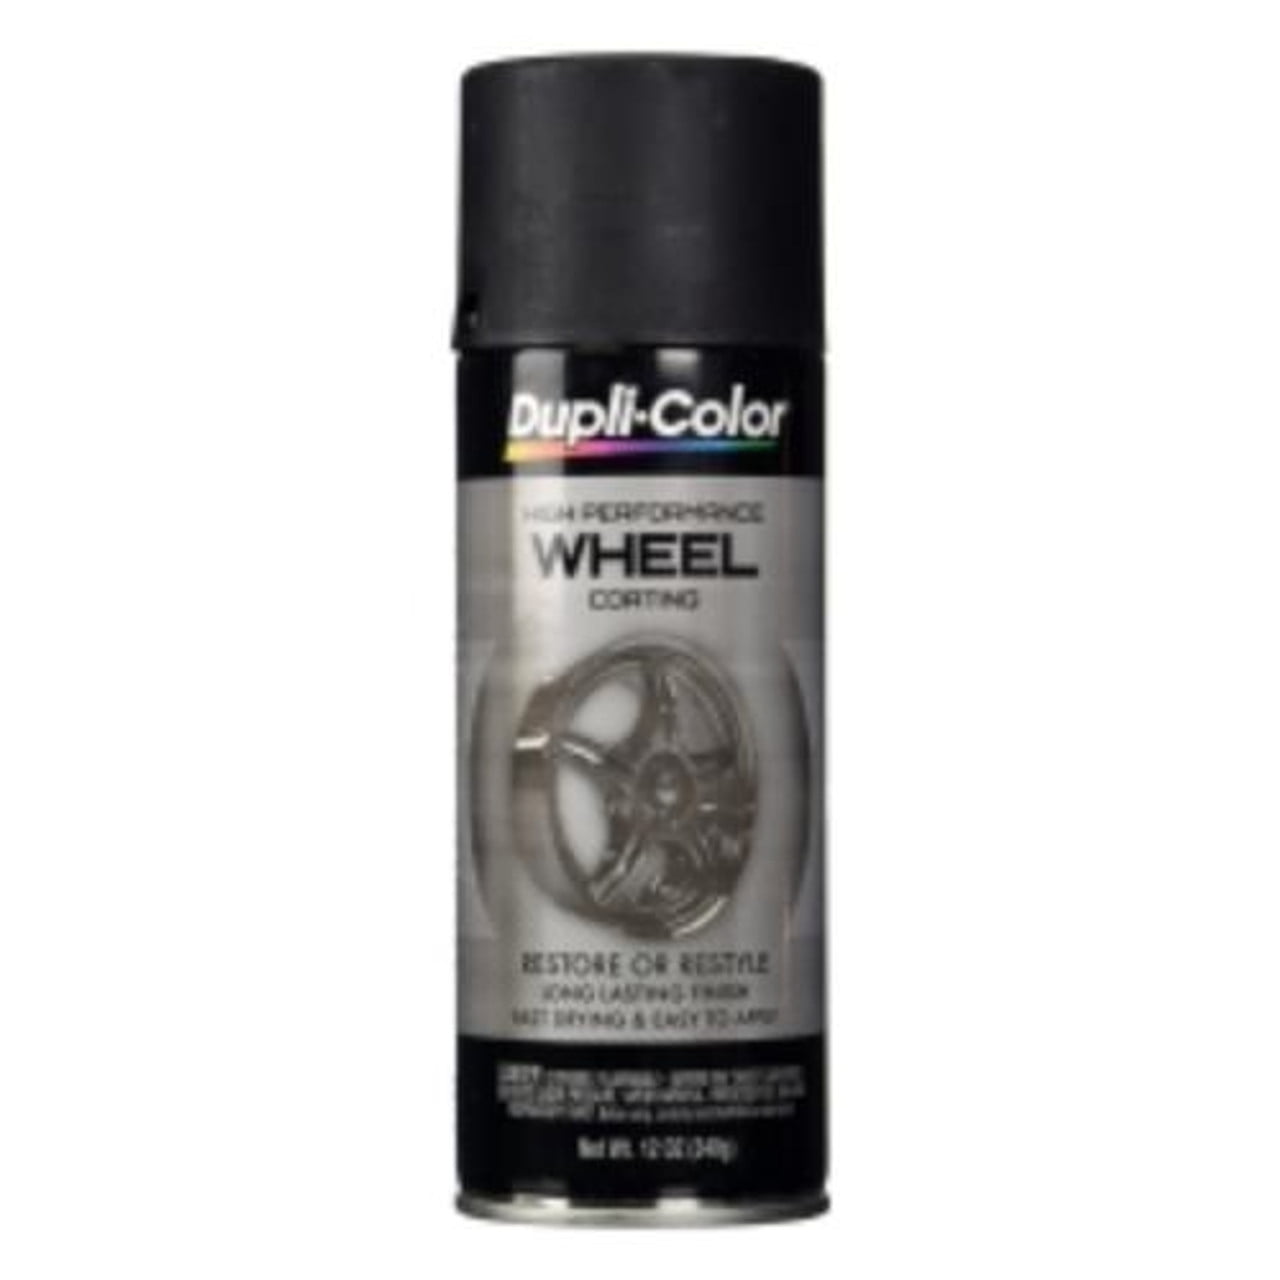 ColorPlace 25004A007 ColorPlace Flat Black 10 oz Spray Paint,  Multi-Surface, (1 Piece, 1 Pack) 